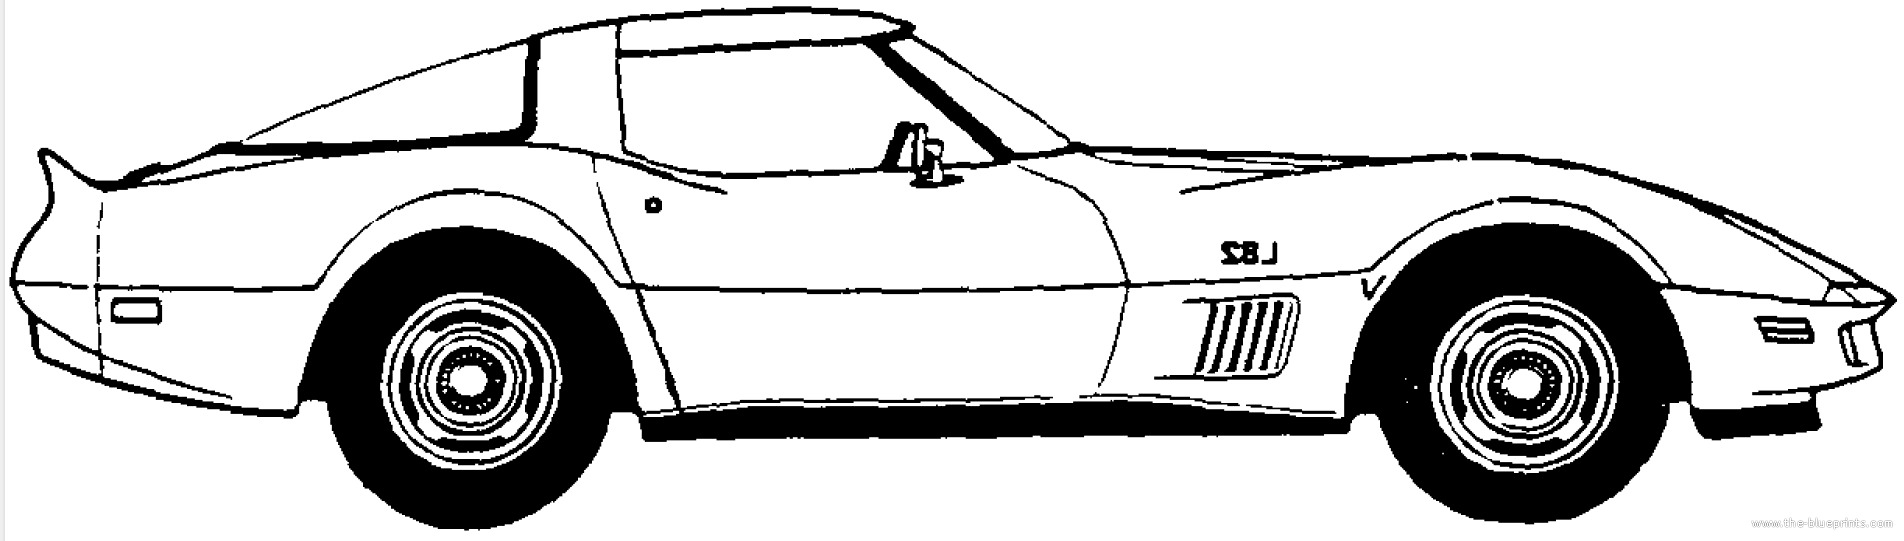 Corvette Zr1 Vector Image Clipart Me u0026middot; The Blueprints Com Blueprints Gt Cars Gt Chevrolet Gt Chevrolet